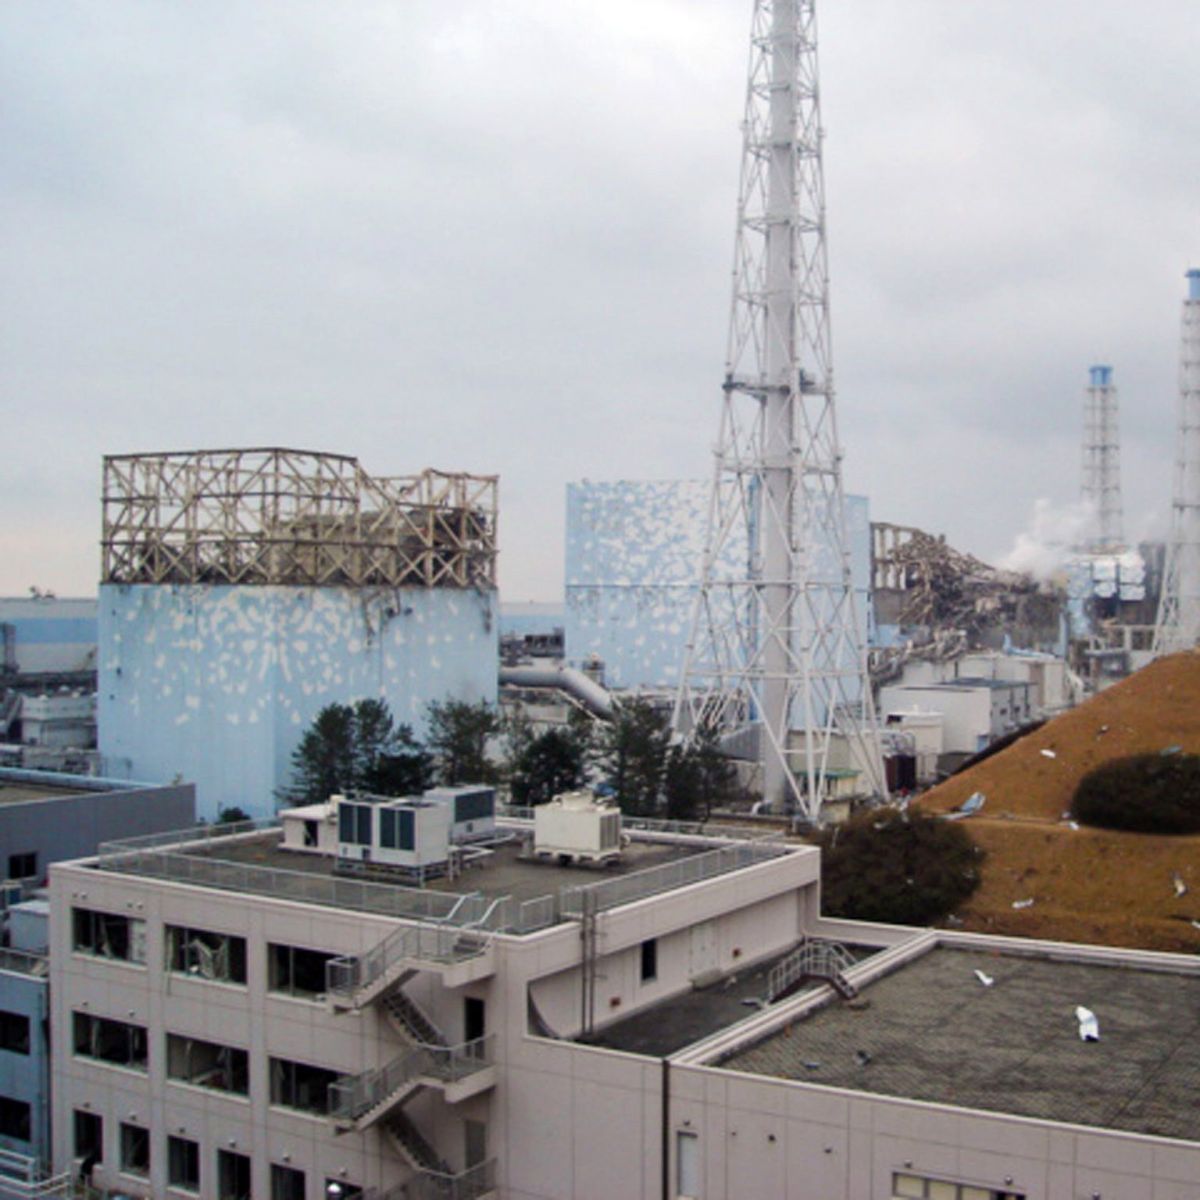 Още изтича радиация от ”Фукушима”, търсят откъде